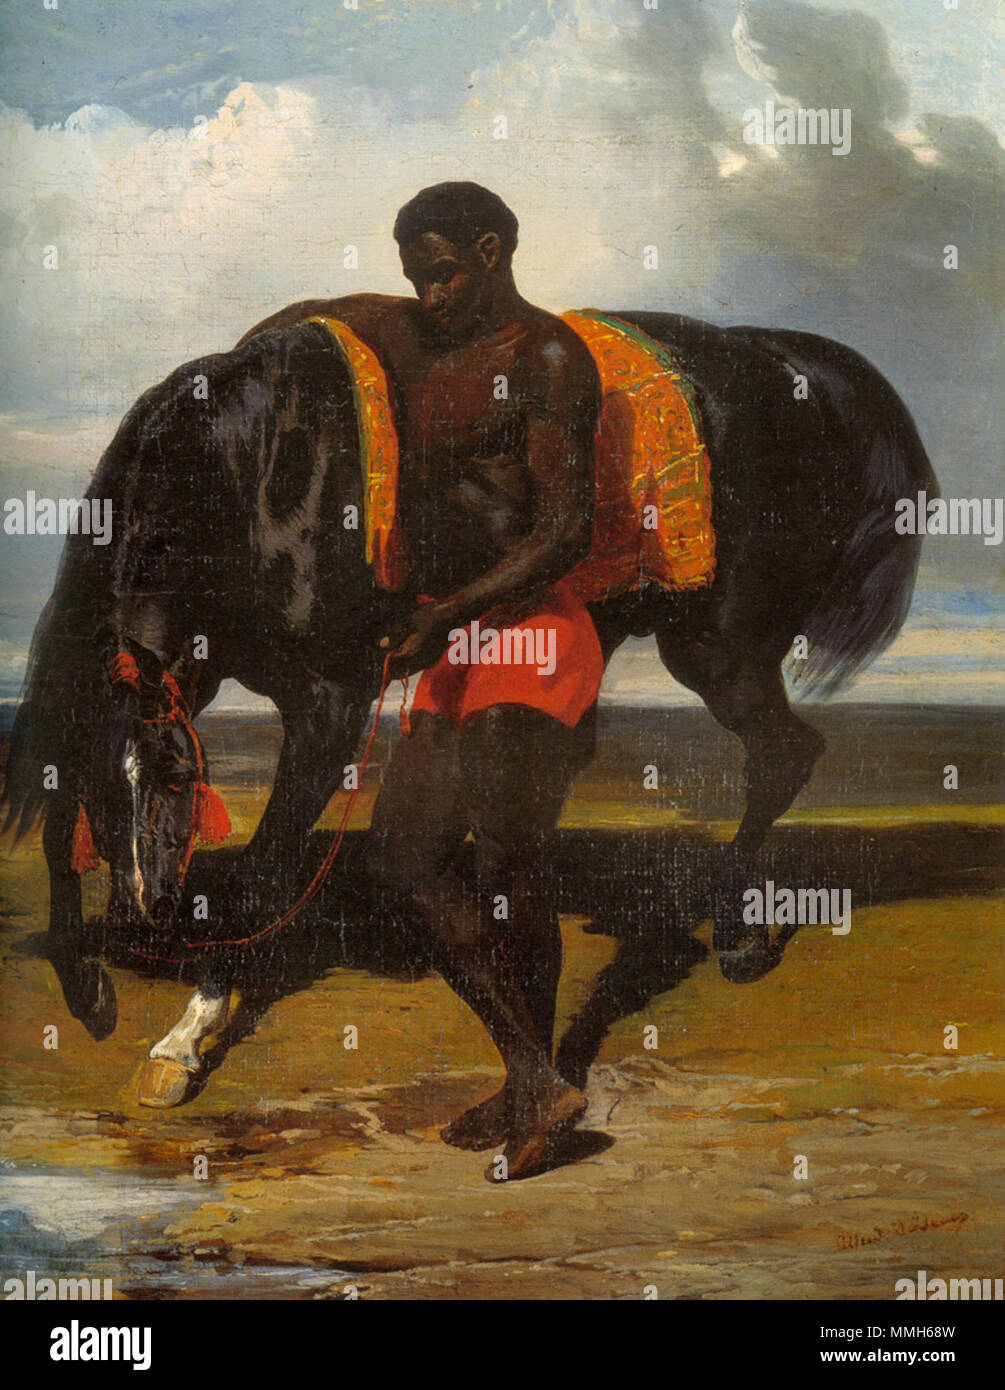 Français : Africain tenant un cheval au bord d'une mer Alfred Dedreux - Africain tenant un cheval au bord d'une mer Stock Photo